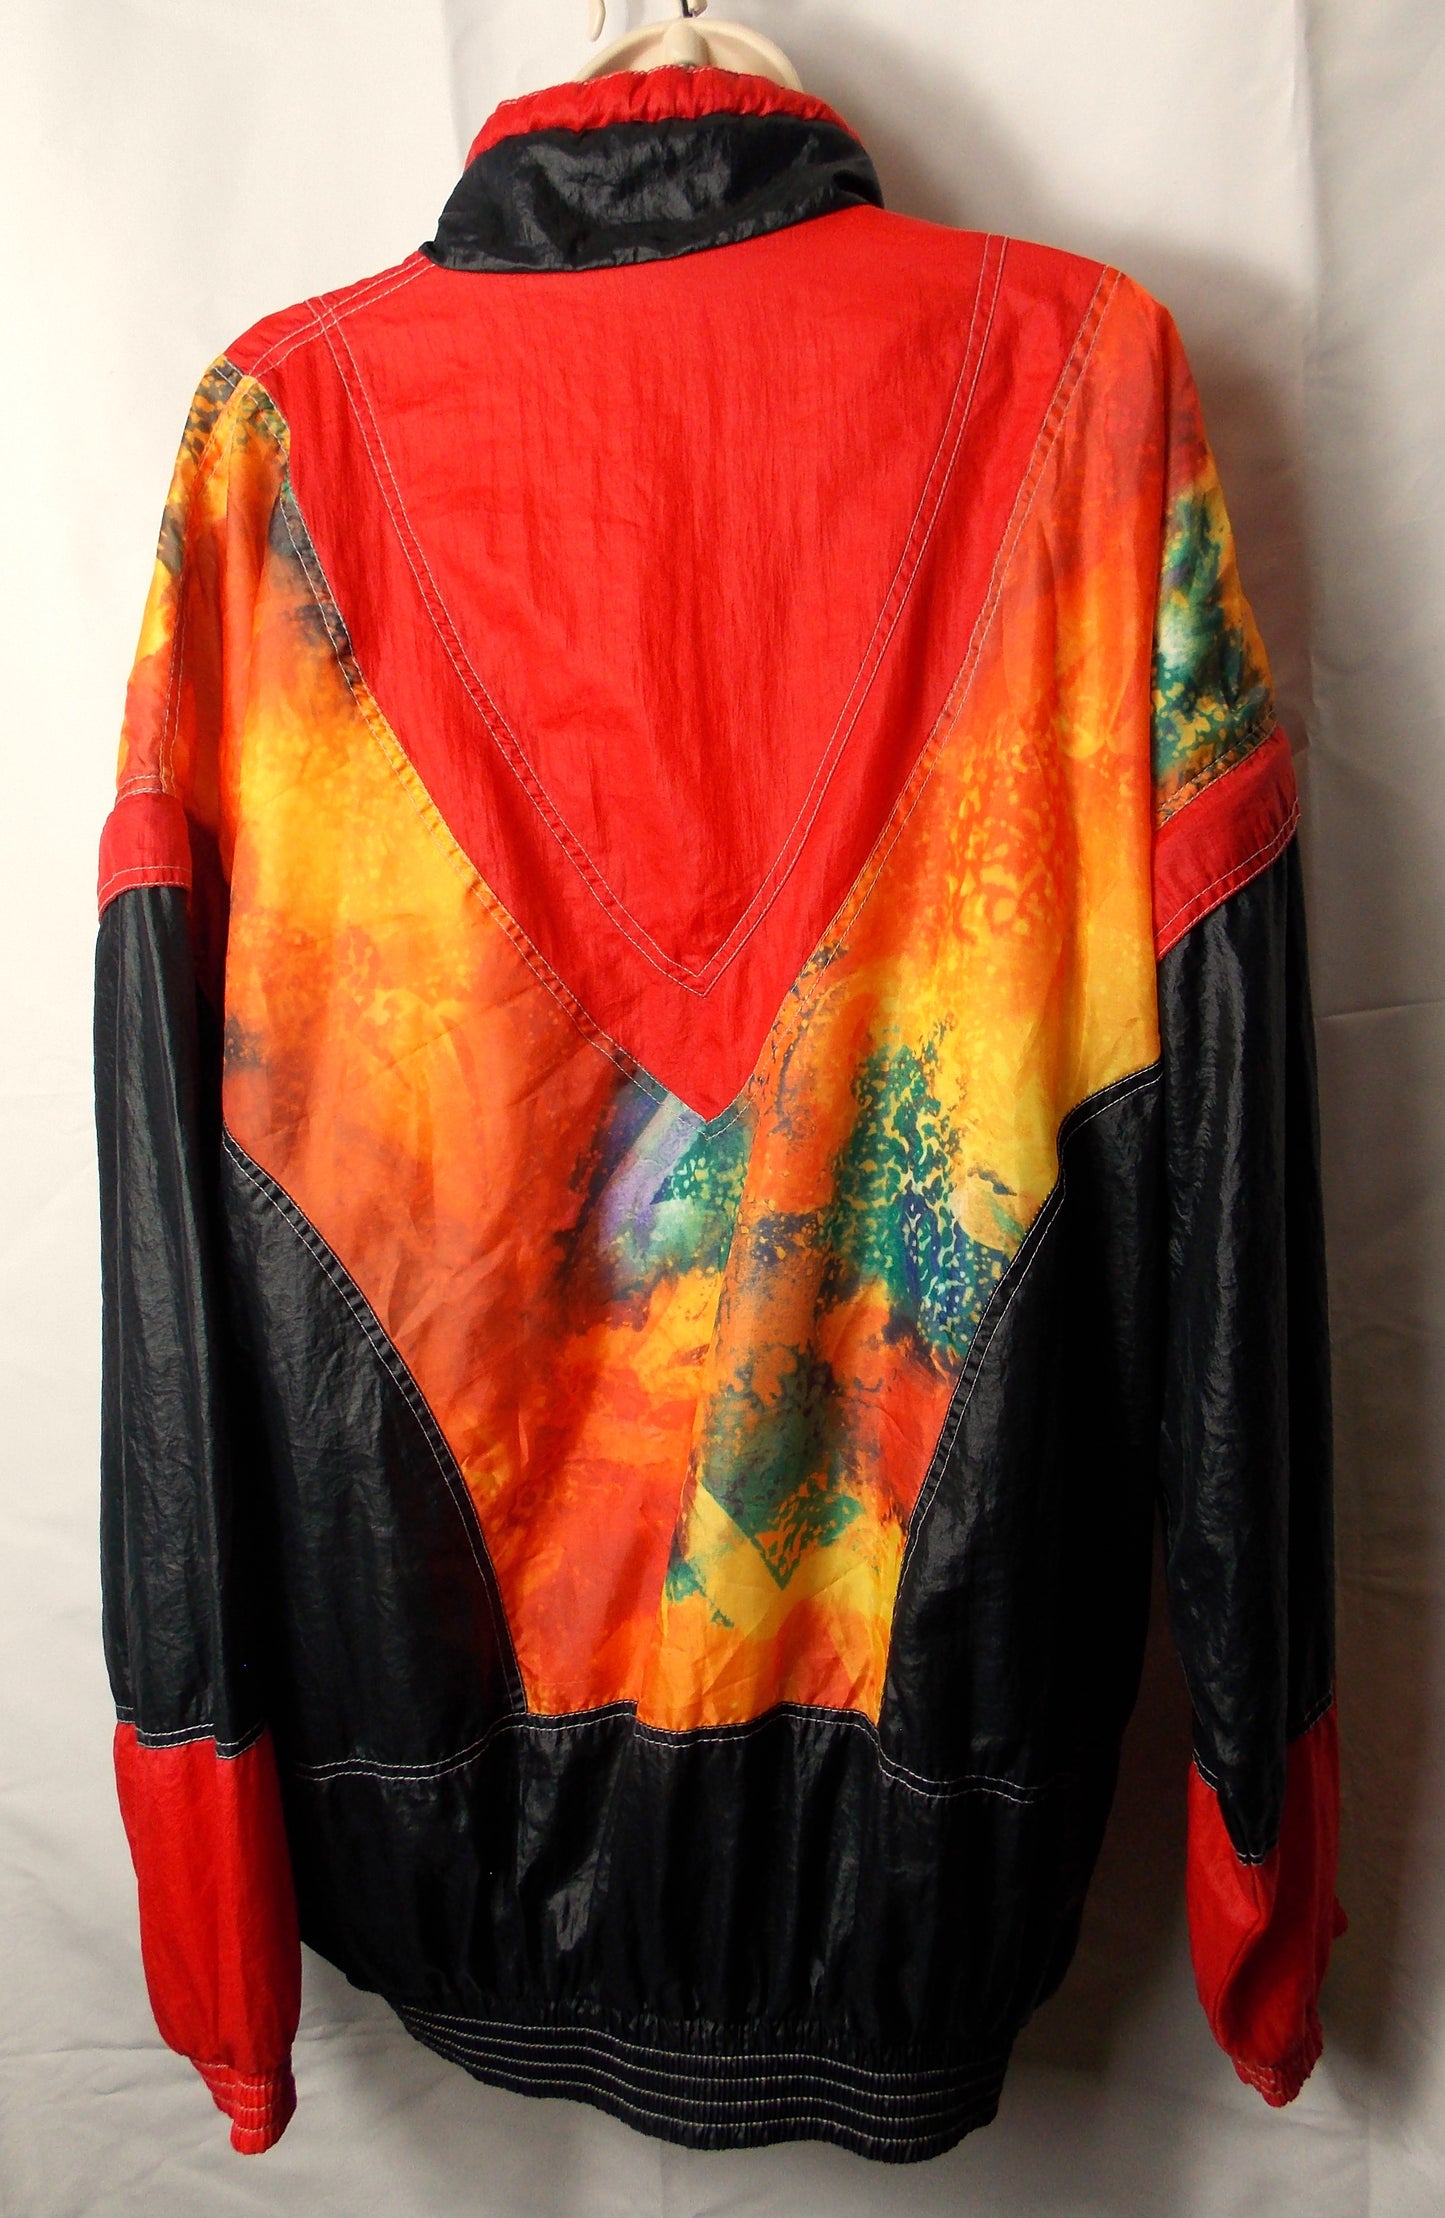 1980's Shell jacket